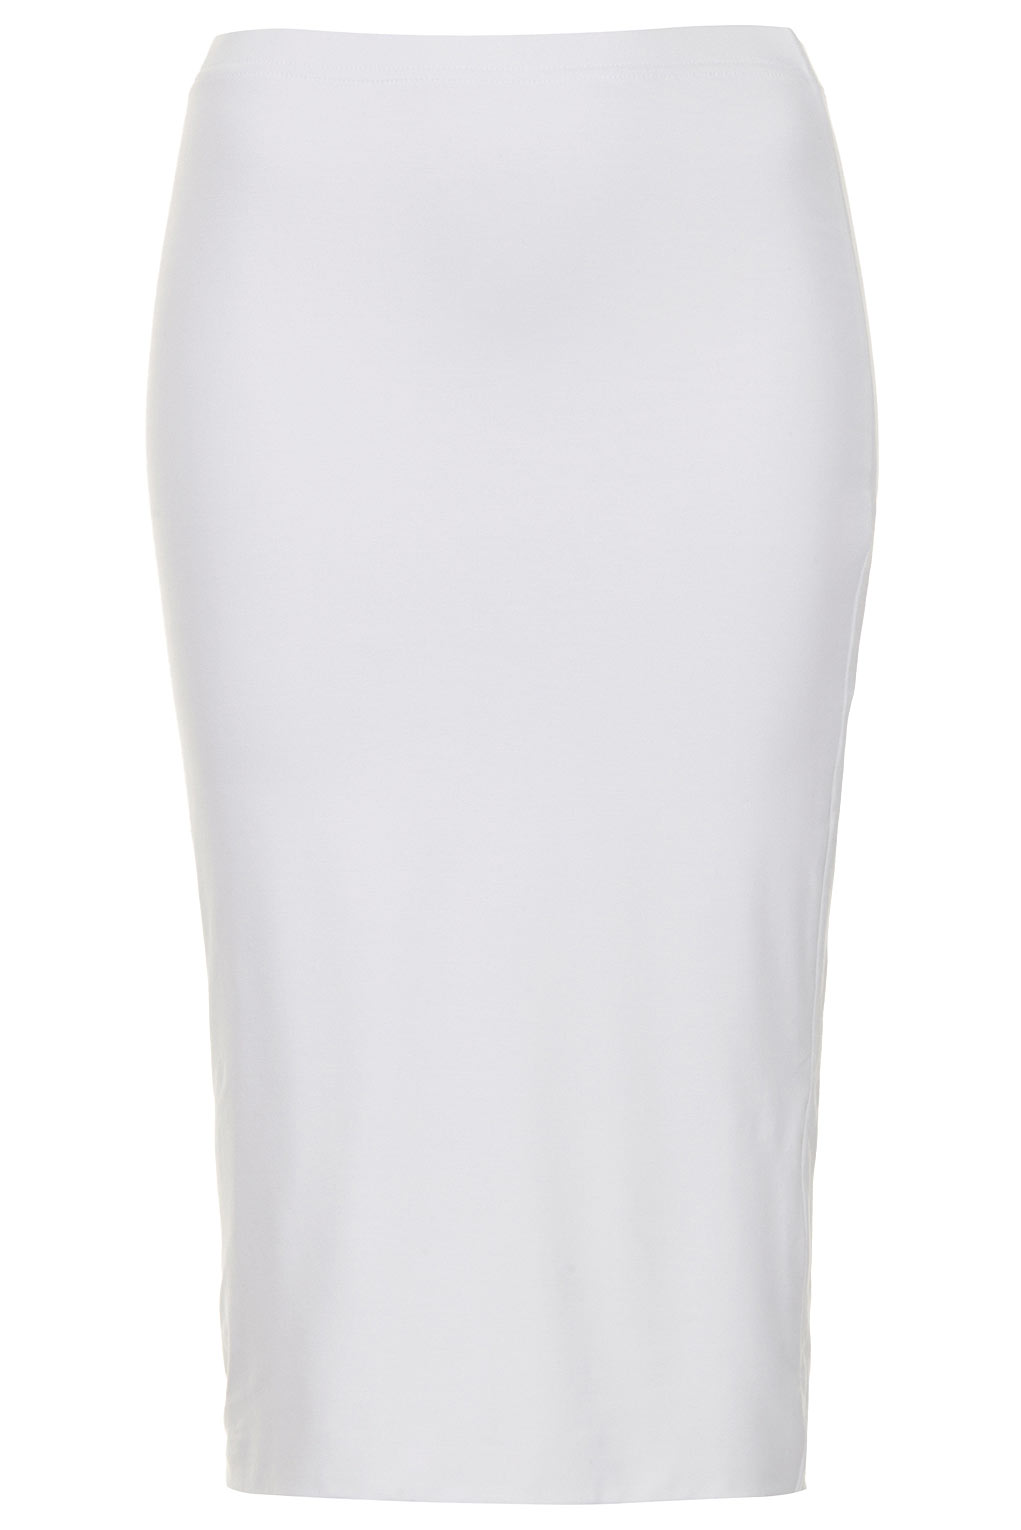 Lyst - Topshop White Tube Skirt in White